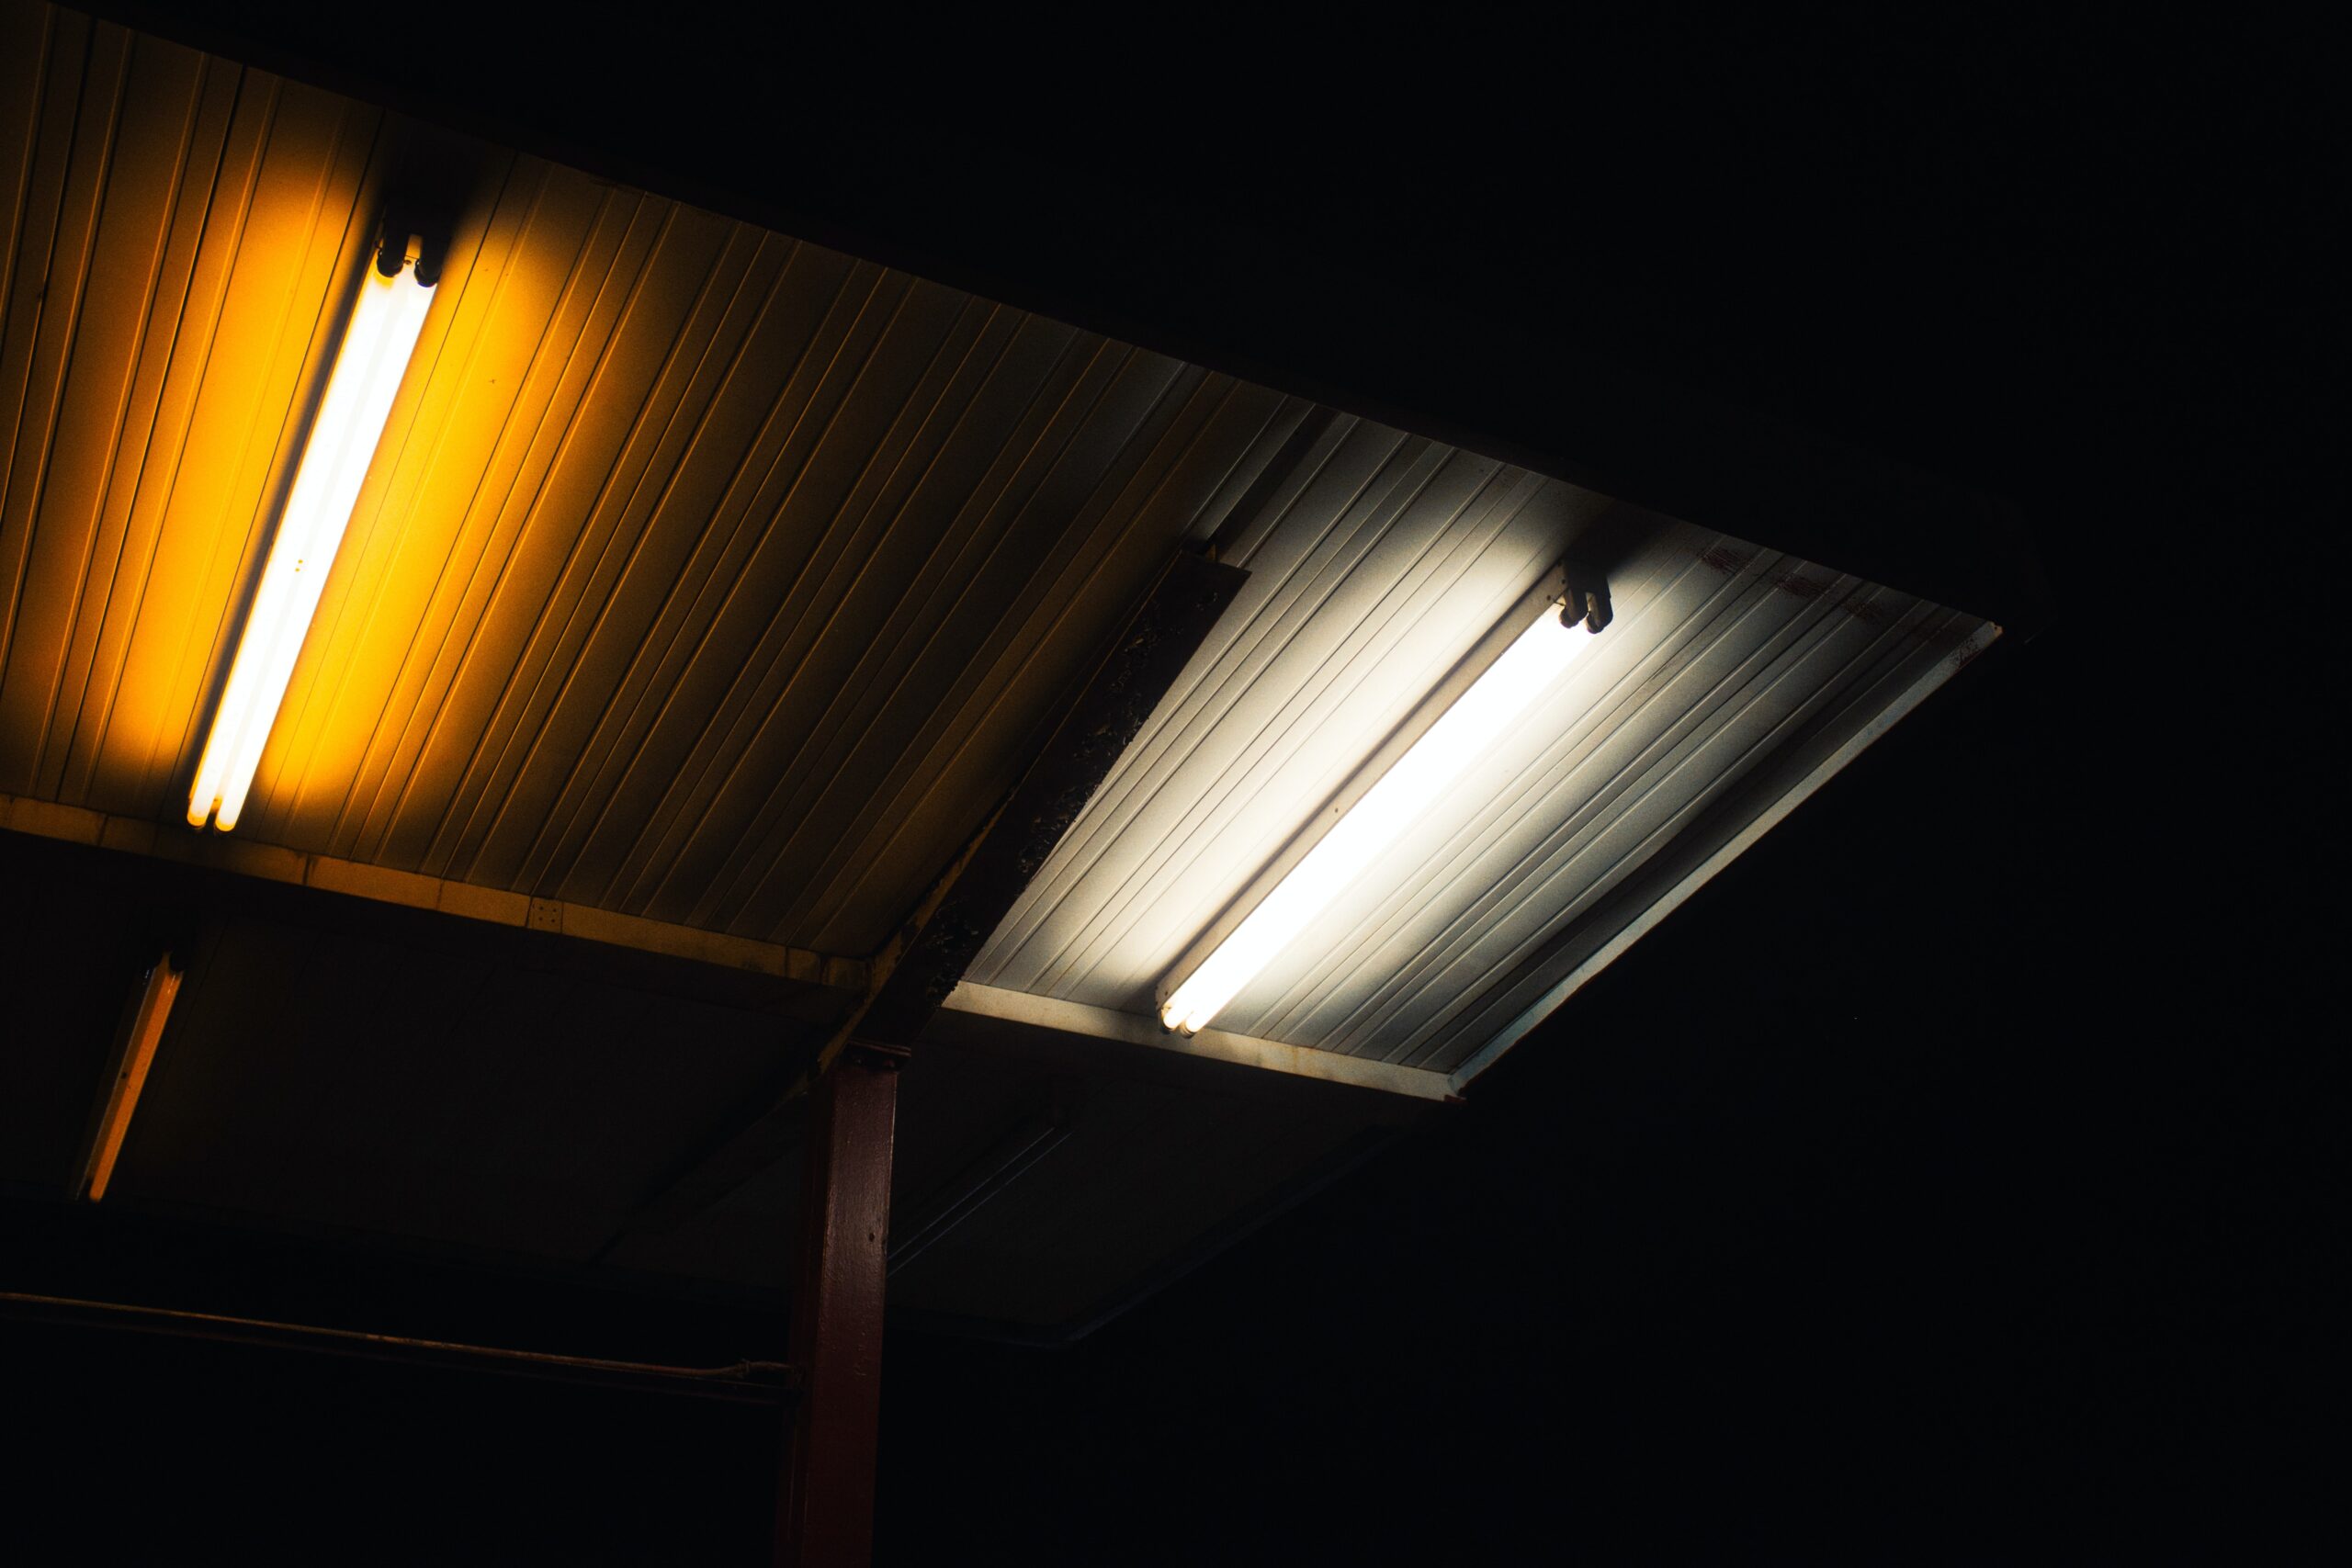 Subskrypcja światła, czyli bezpłatna modernizacja oświetlenia na LED